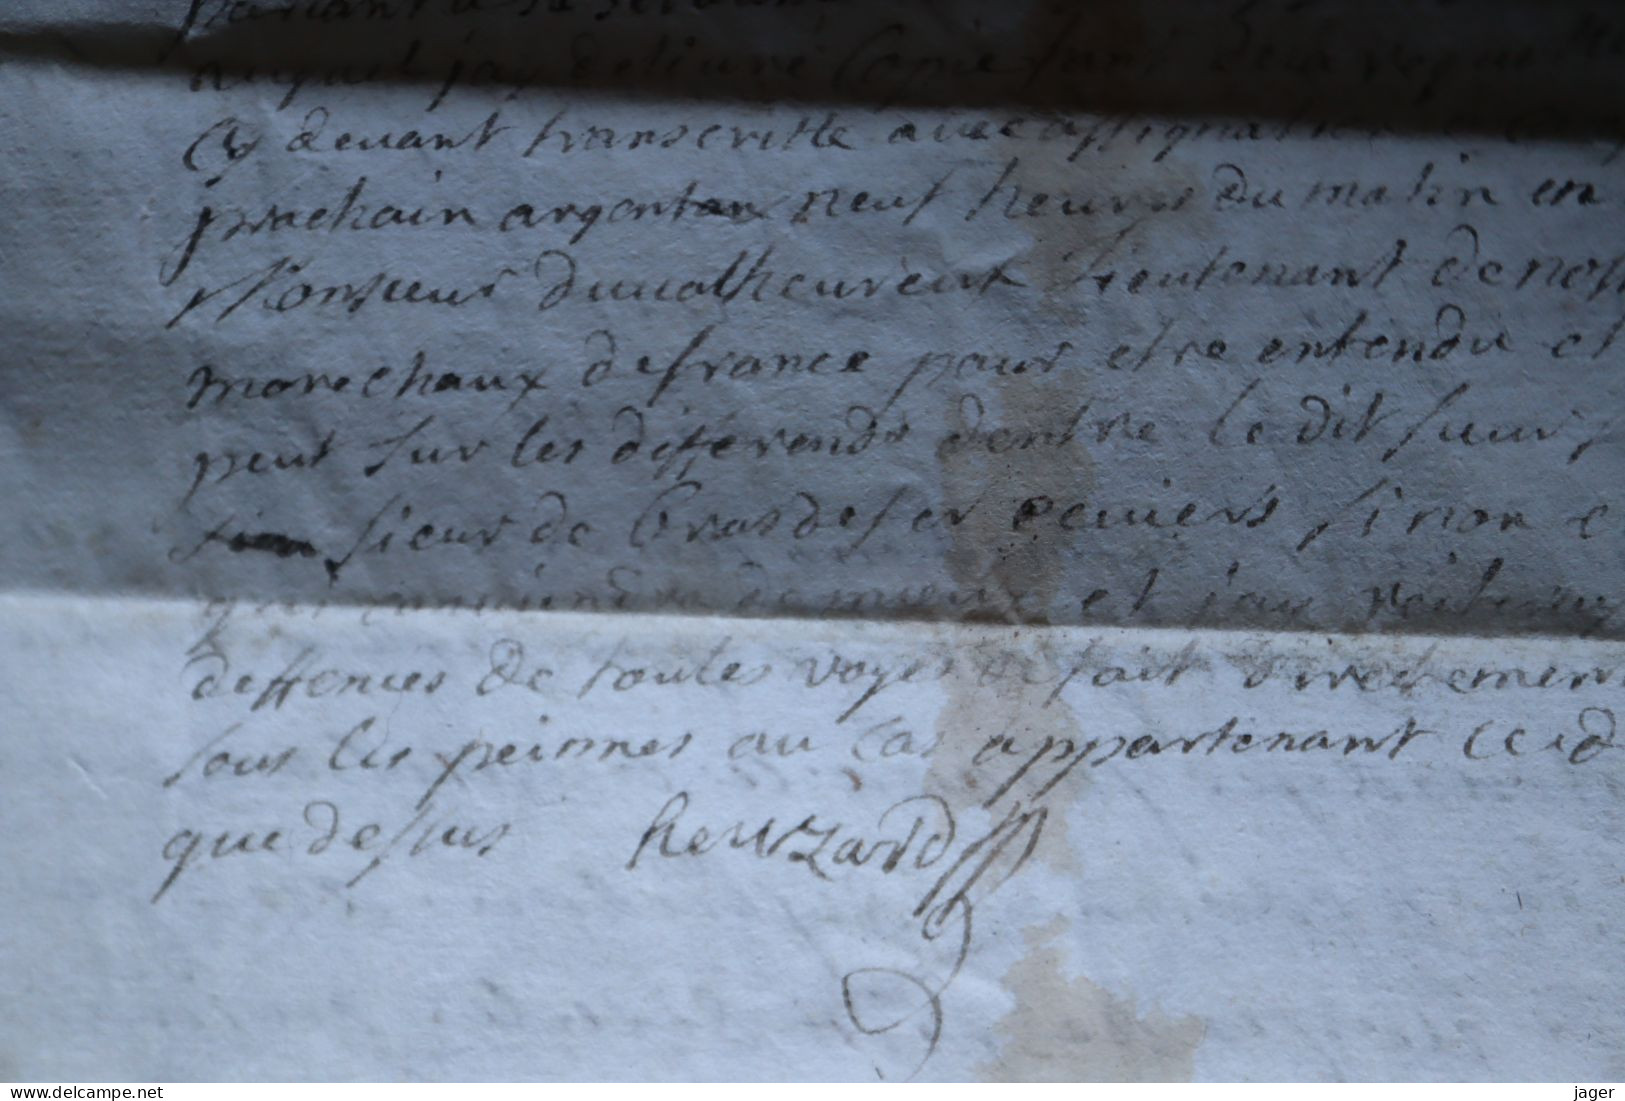 1750 Maréchaussée de France  département d'Argentan  Chasse pêche  cachet autographe